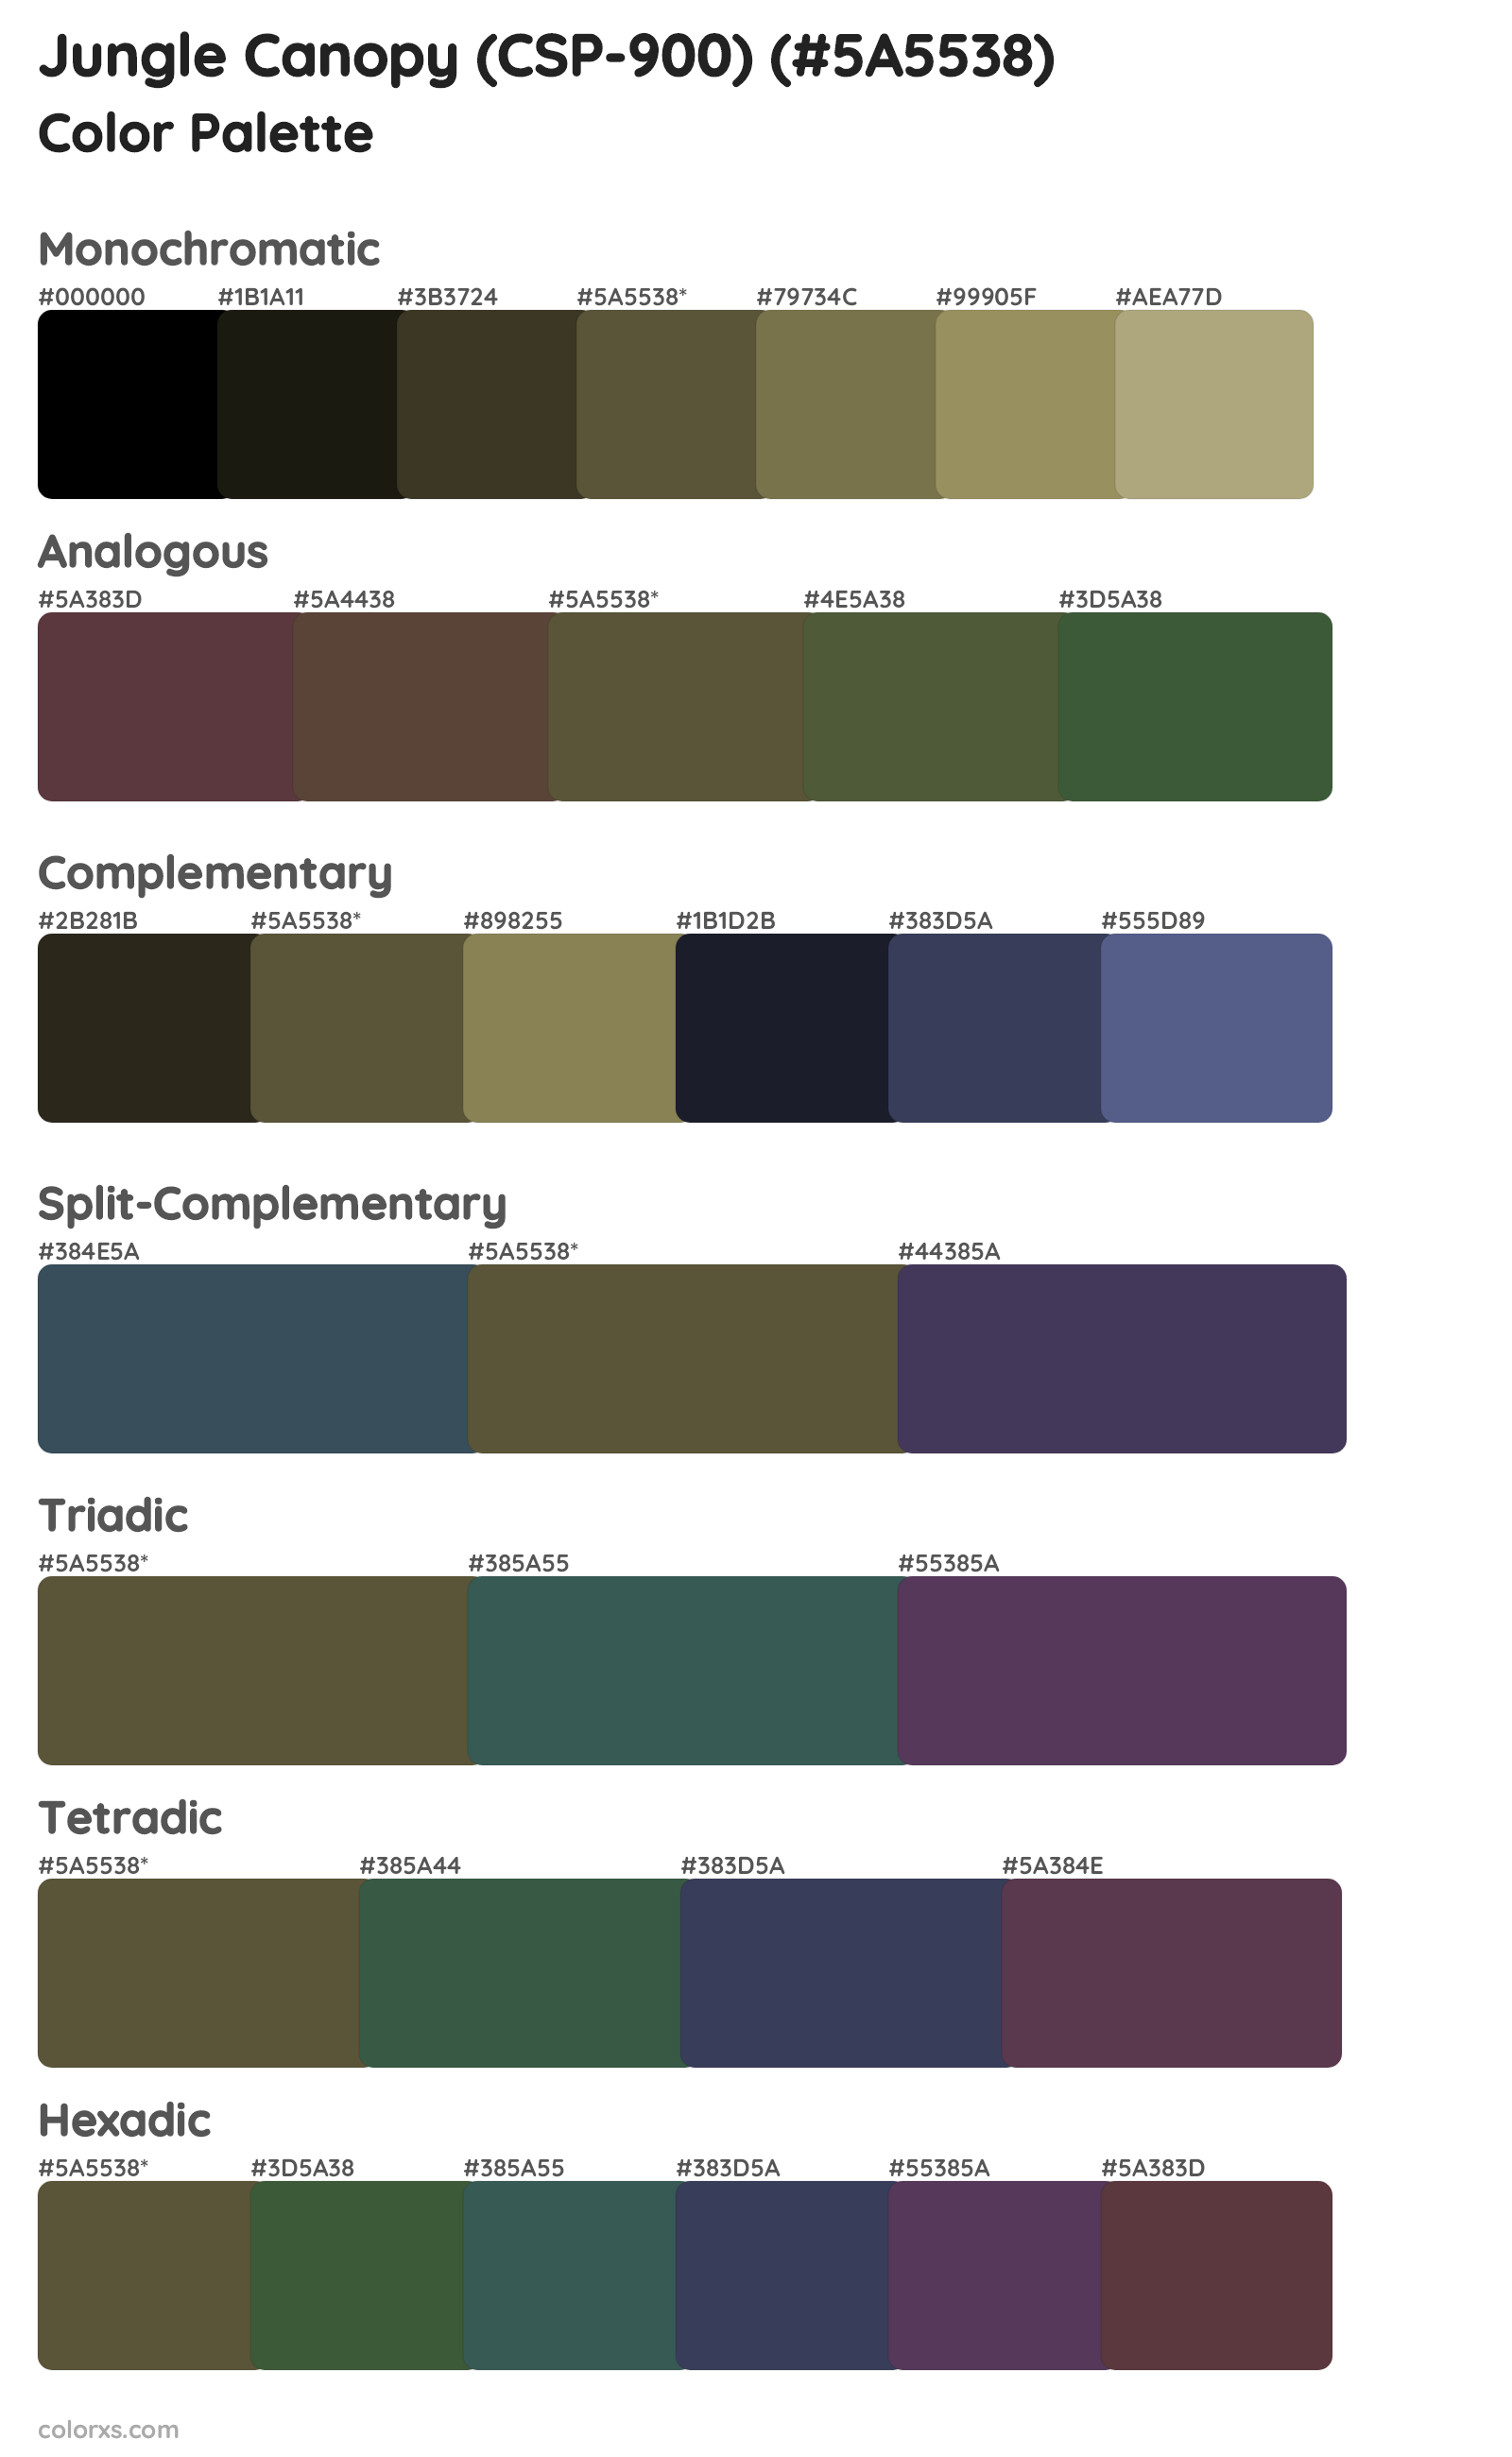 Jungle Canopy (CSP-900) Color Scheme Palettes